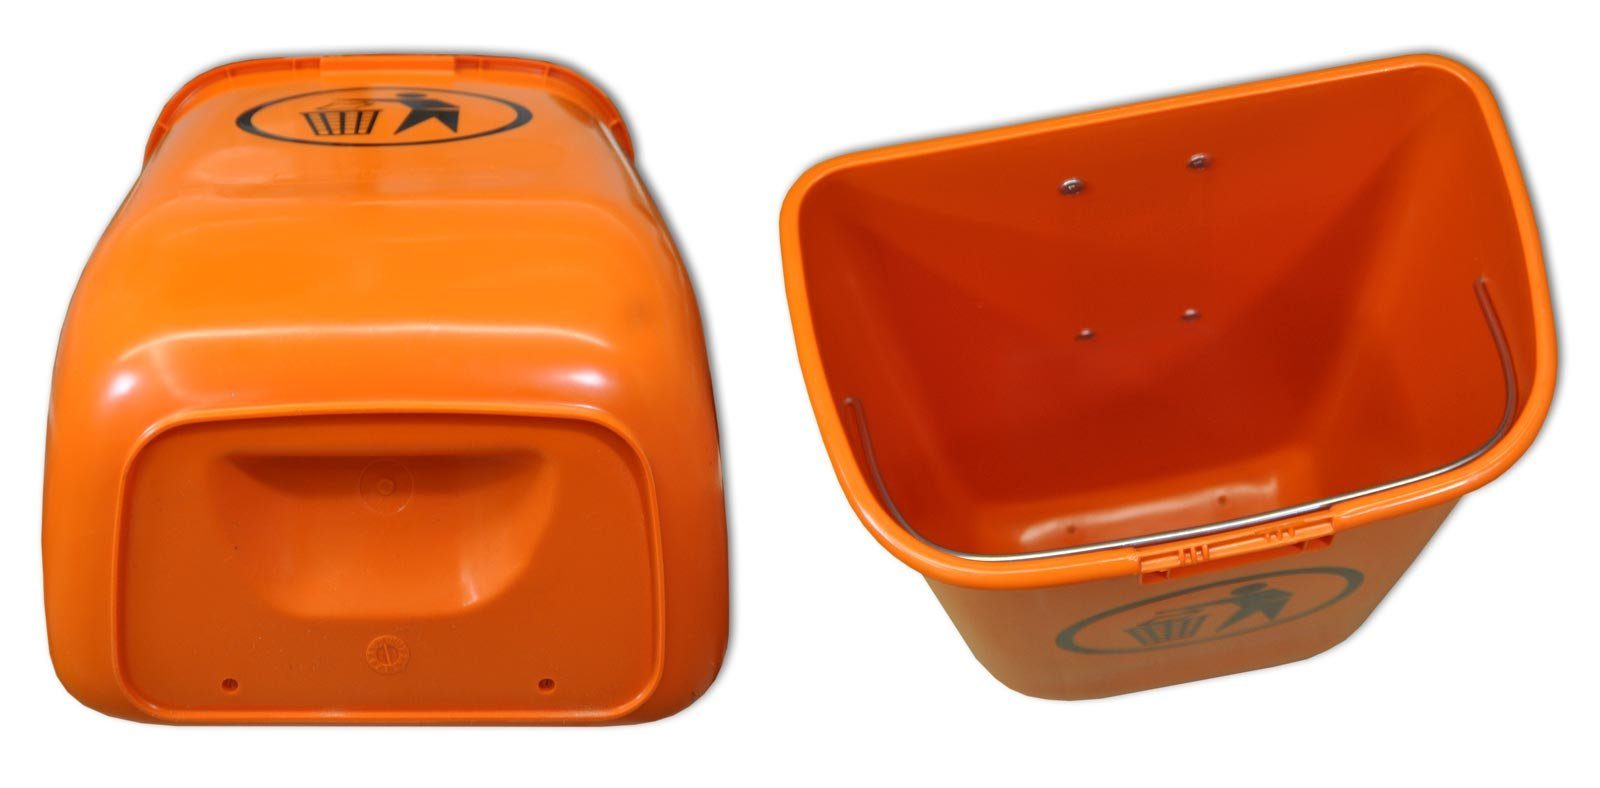 SULO Mülleimer Sulo Original Set orange Papierkorb mit Abfallbehälter Regenhaube